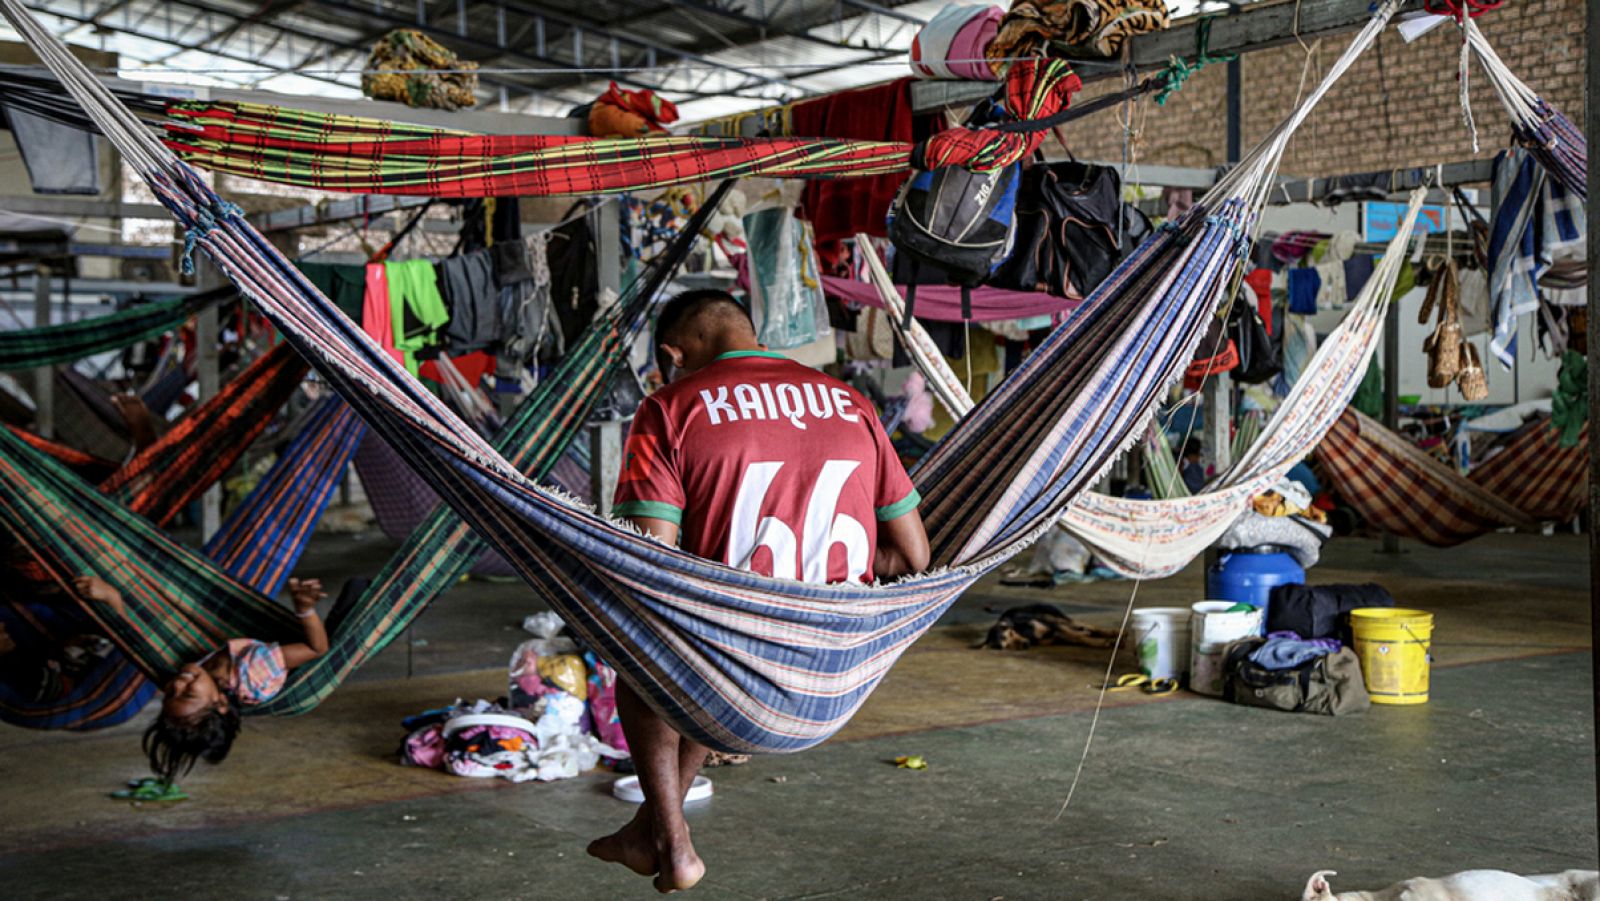 El refugio Pintolandia, en Boa Vista, aloja familias indígenas con hamacas, para que puedan sentirse un poco "en casa". Victoria Servilhano/MSF